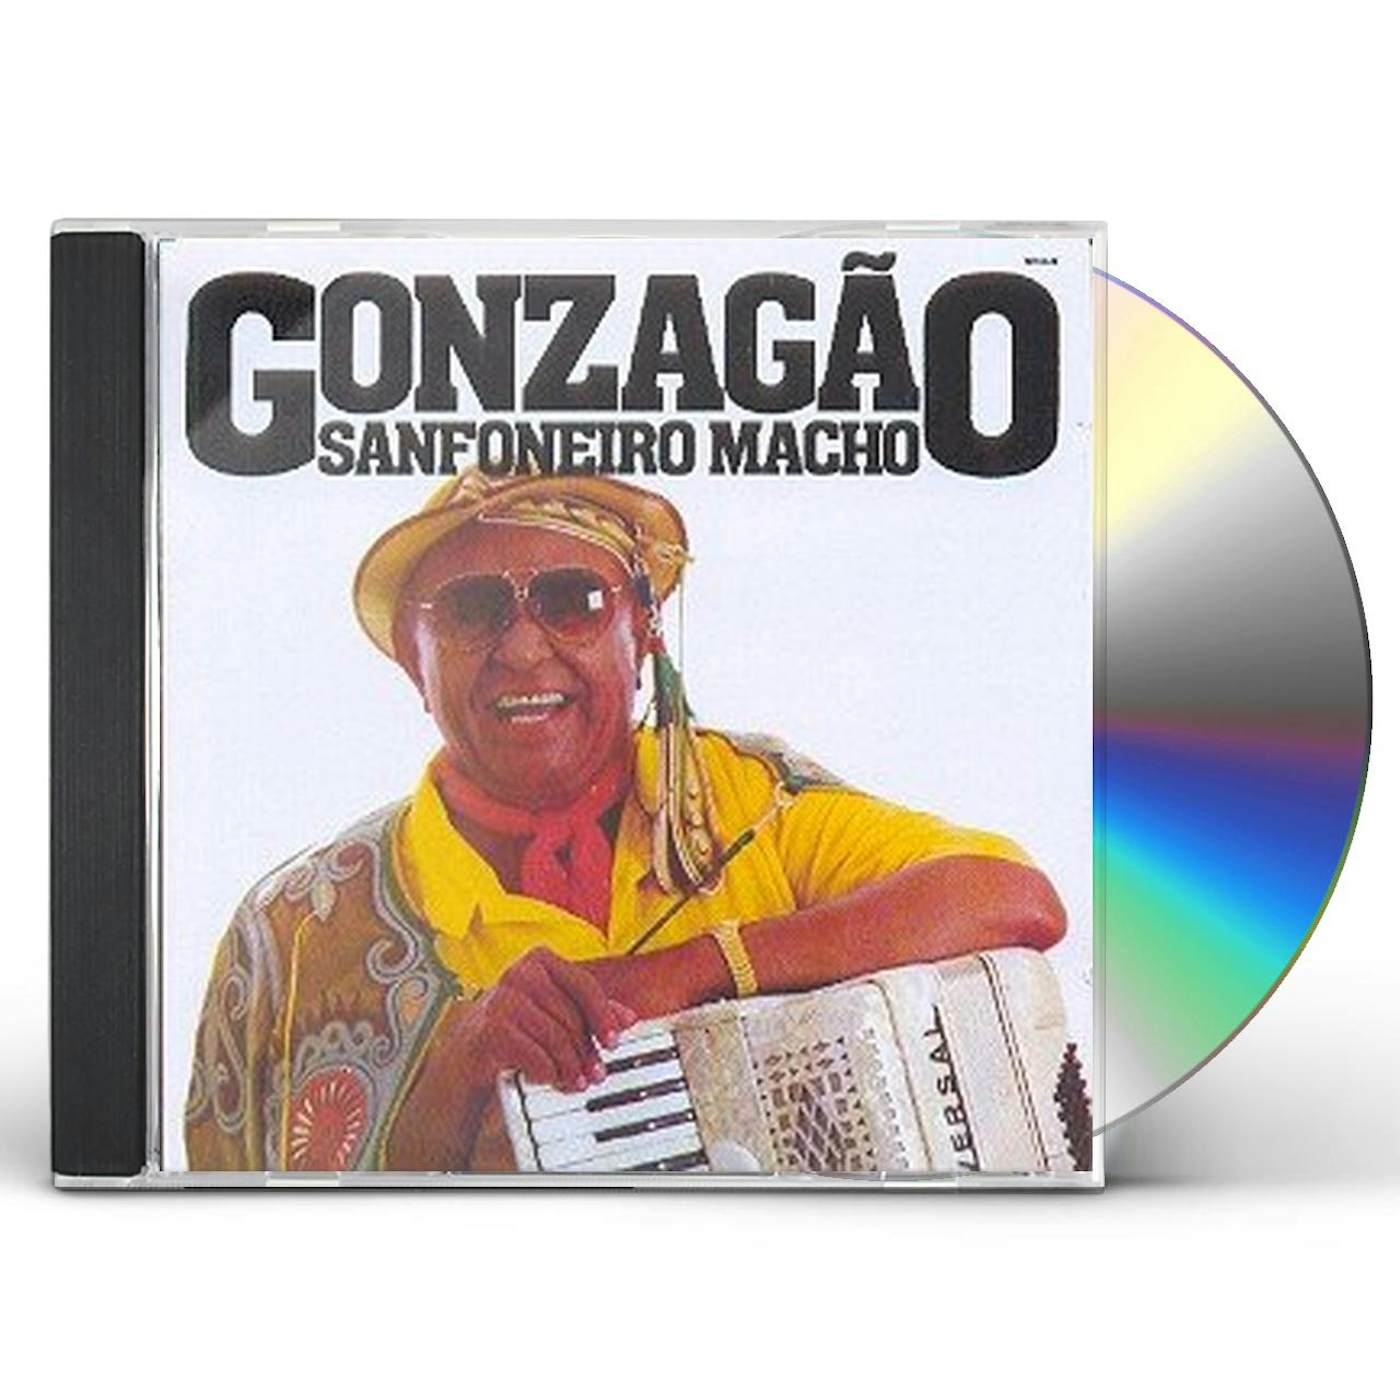 Luiz Gonzaga SANFONEIRO MACHO CD